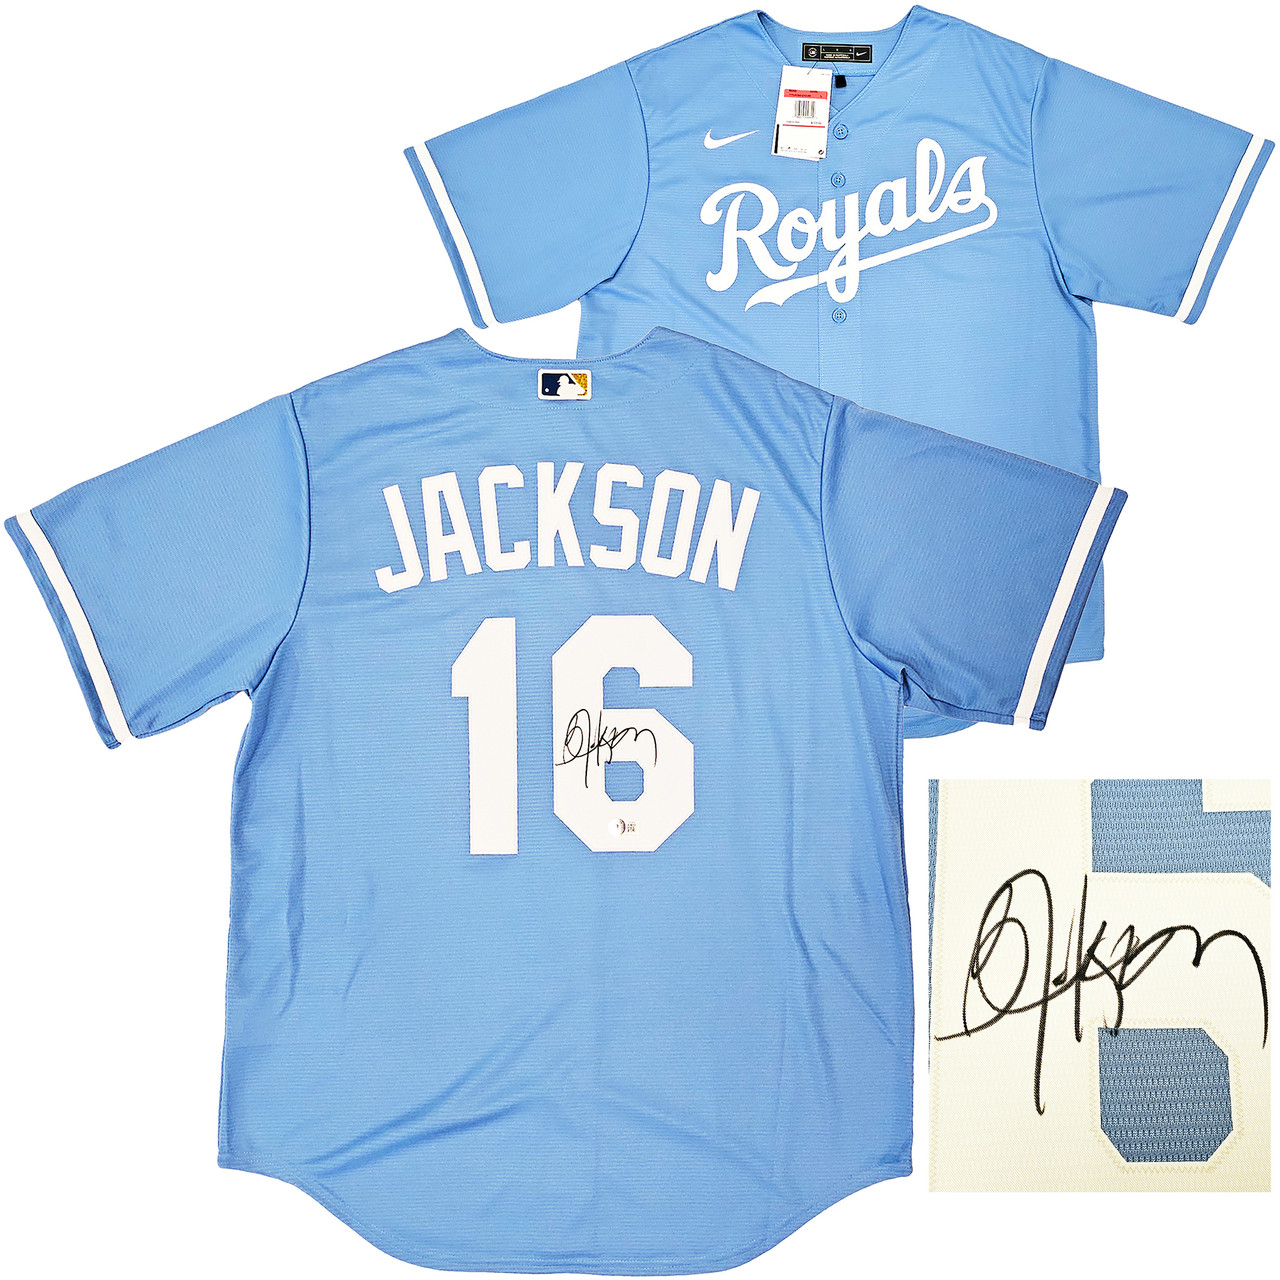  Royals Bo Jackson Autographed Light Blue Authentic